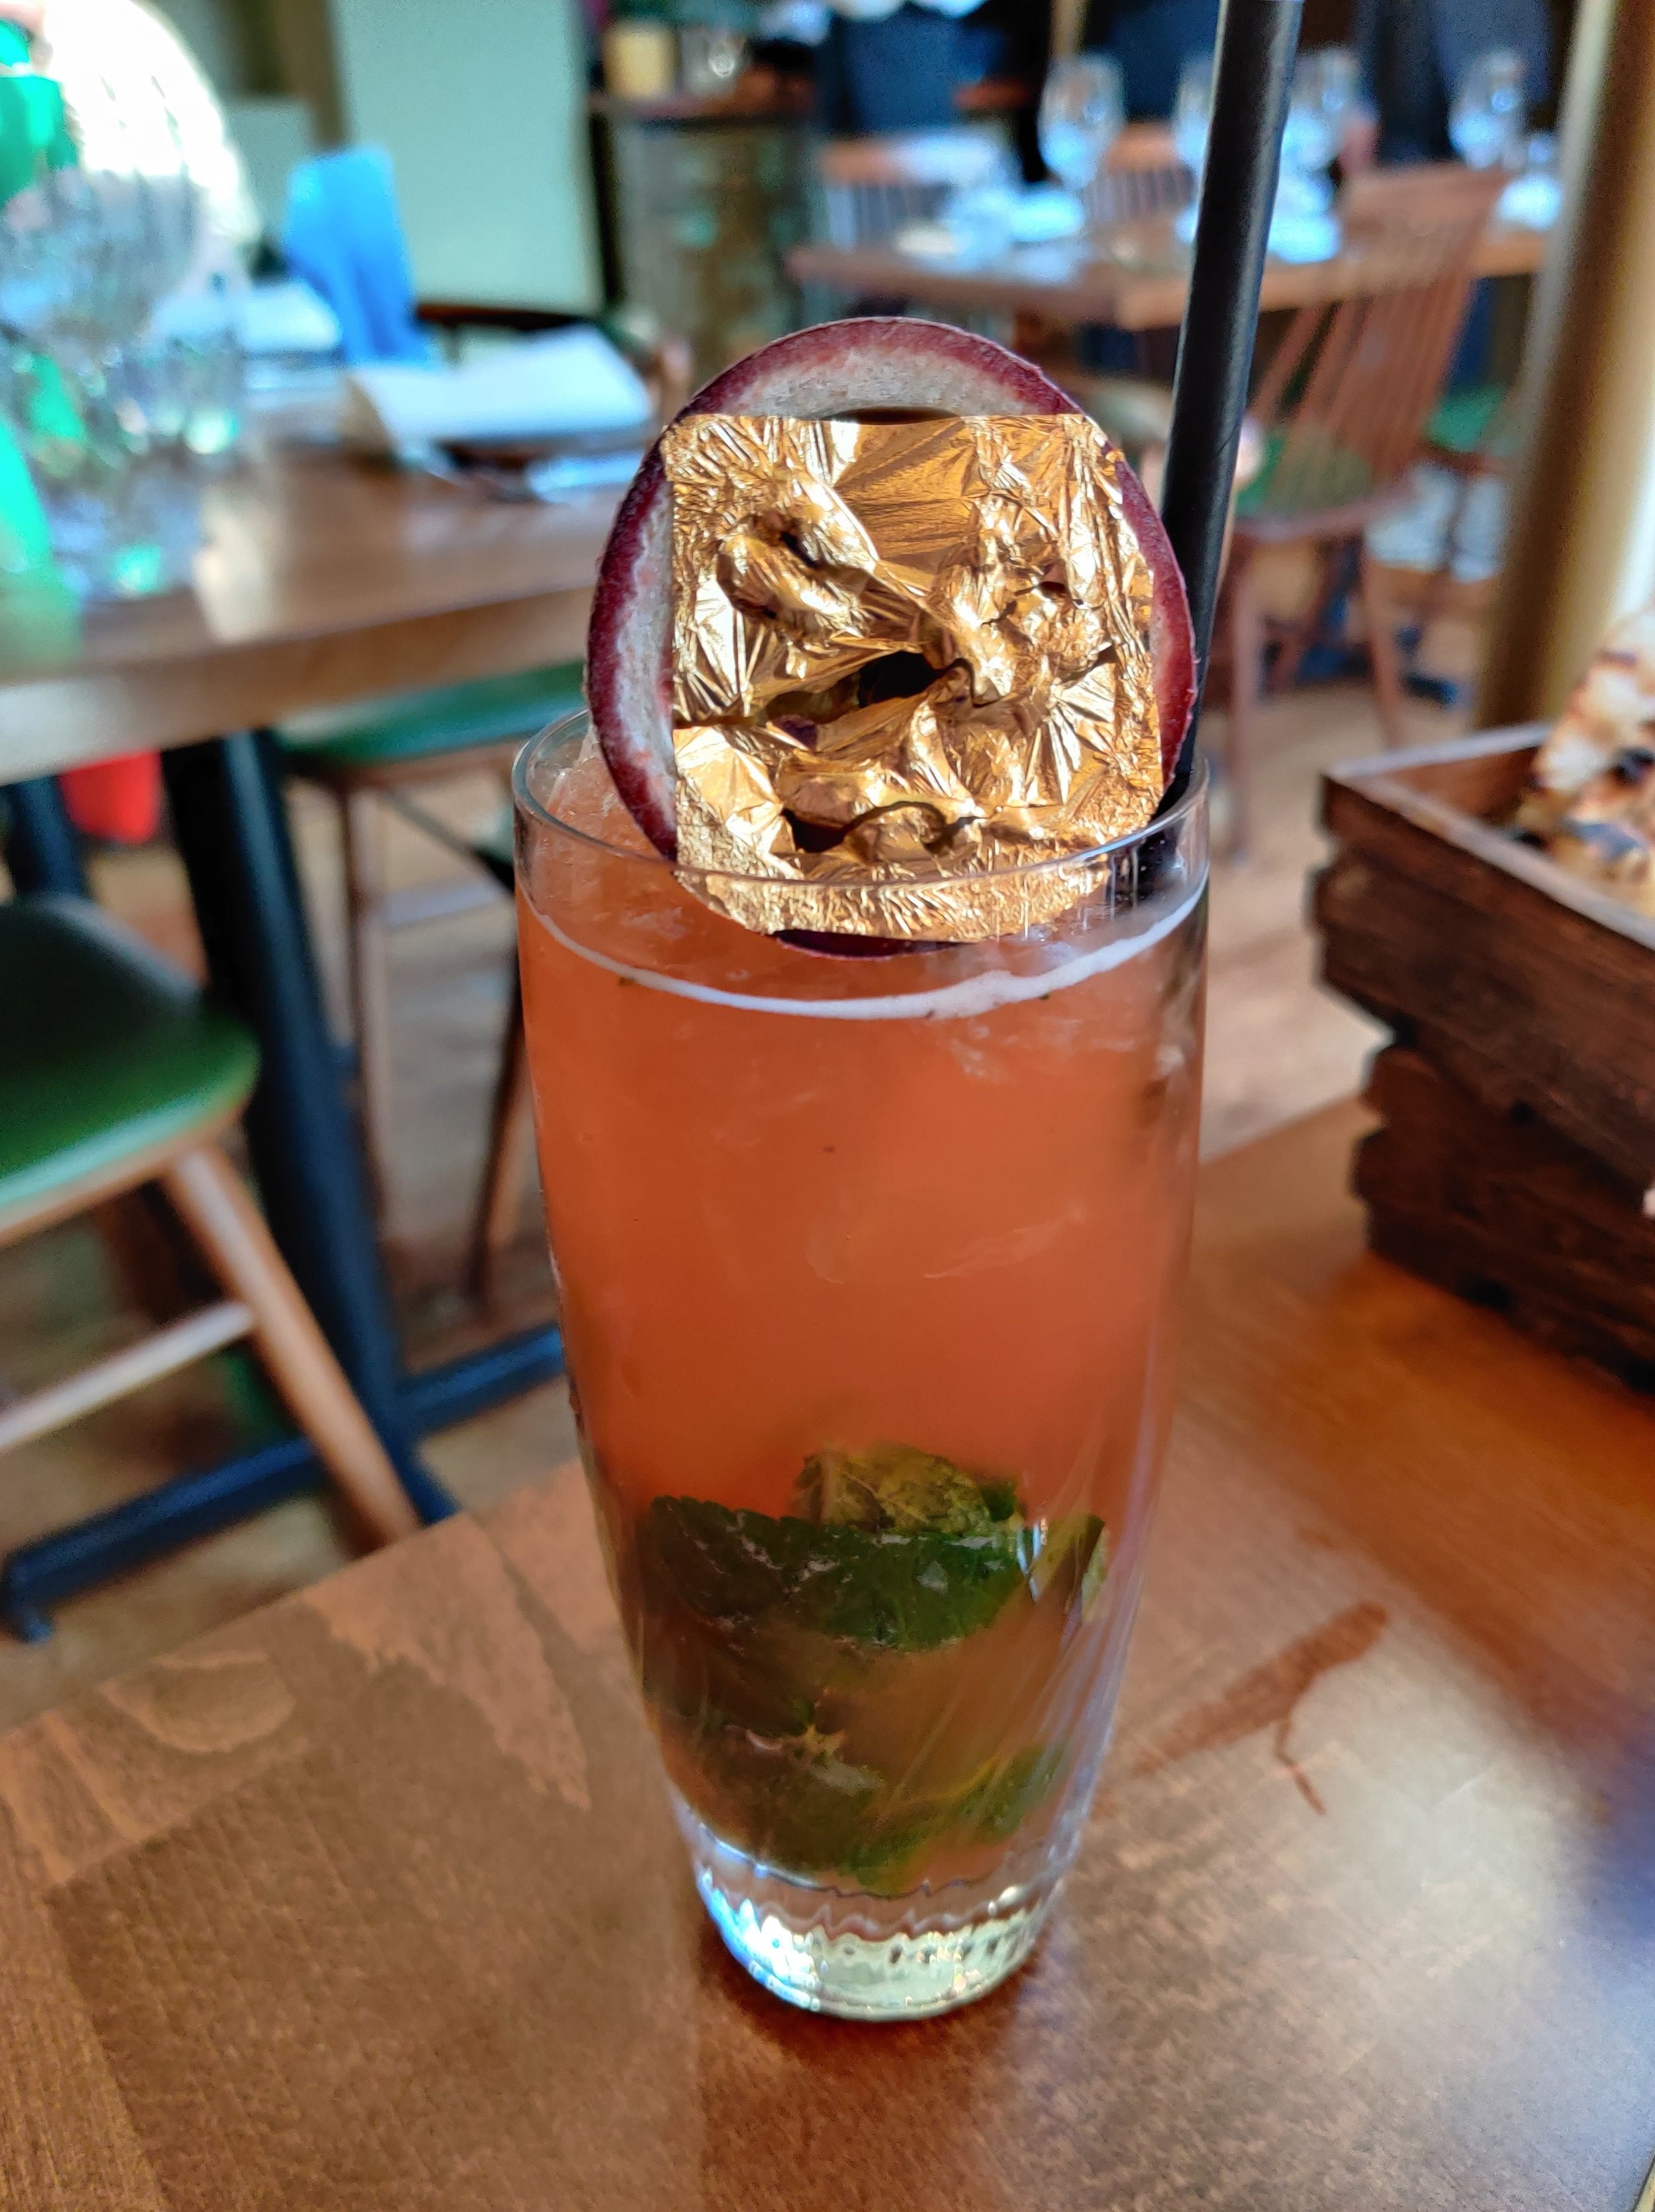 Riwaz beaconsfield review atul kochhar cocktails